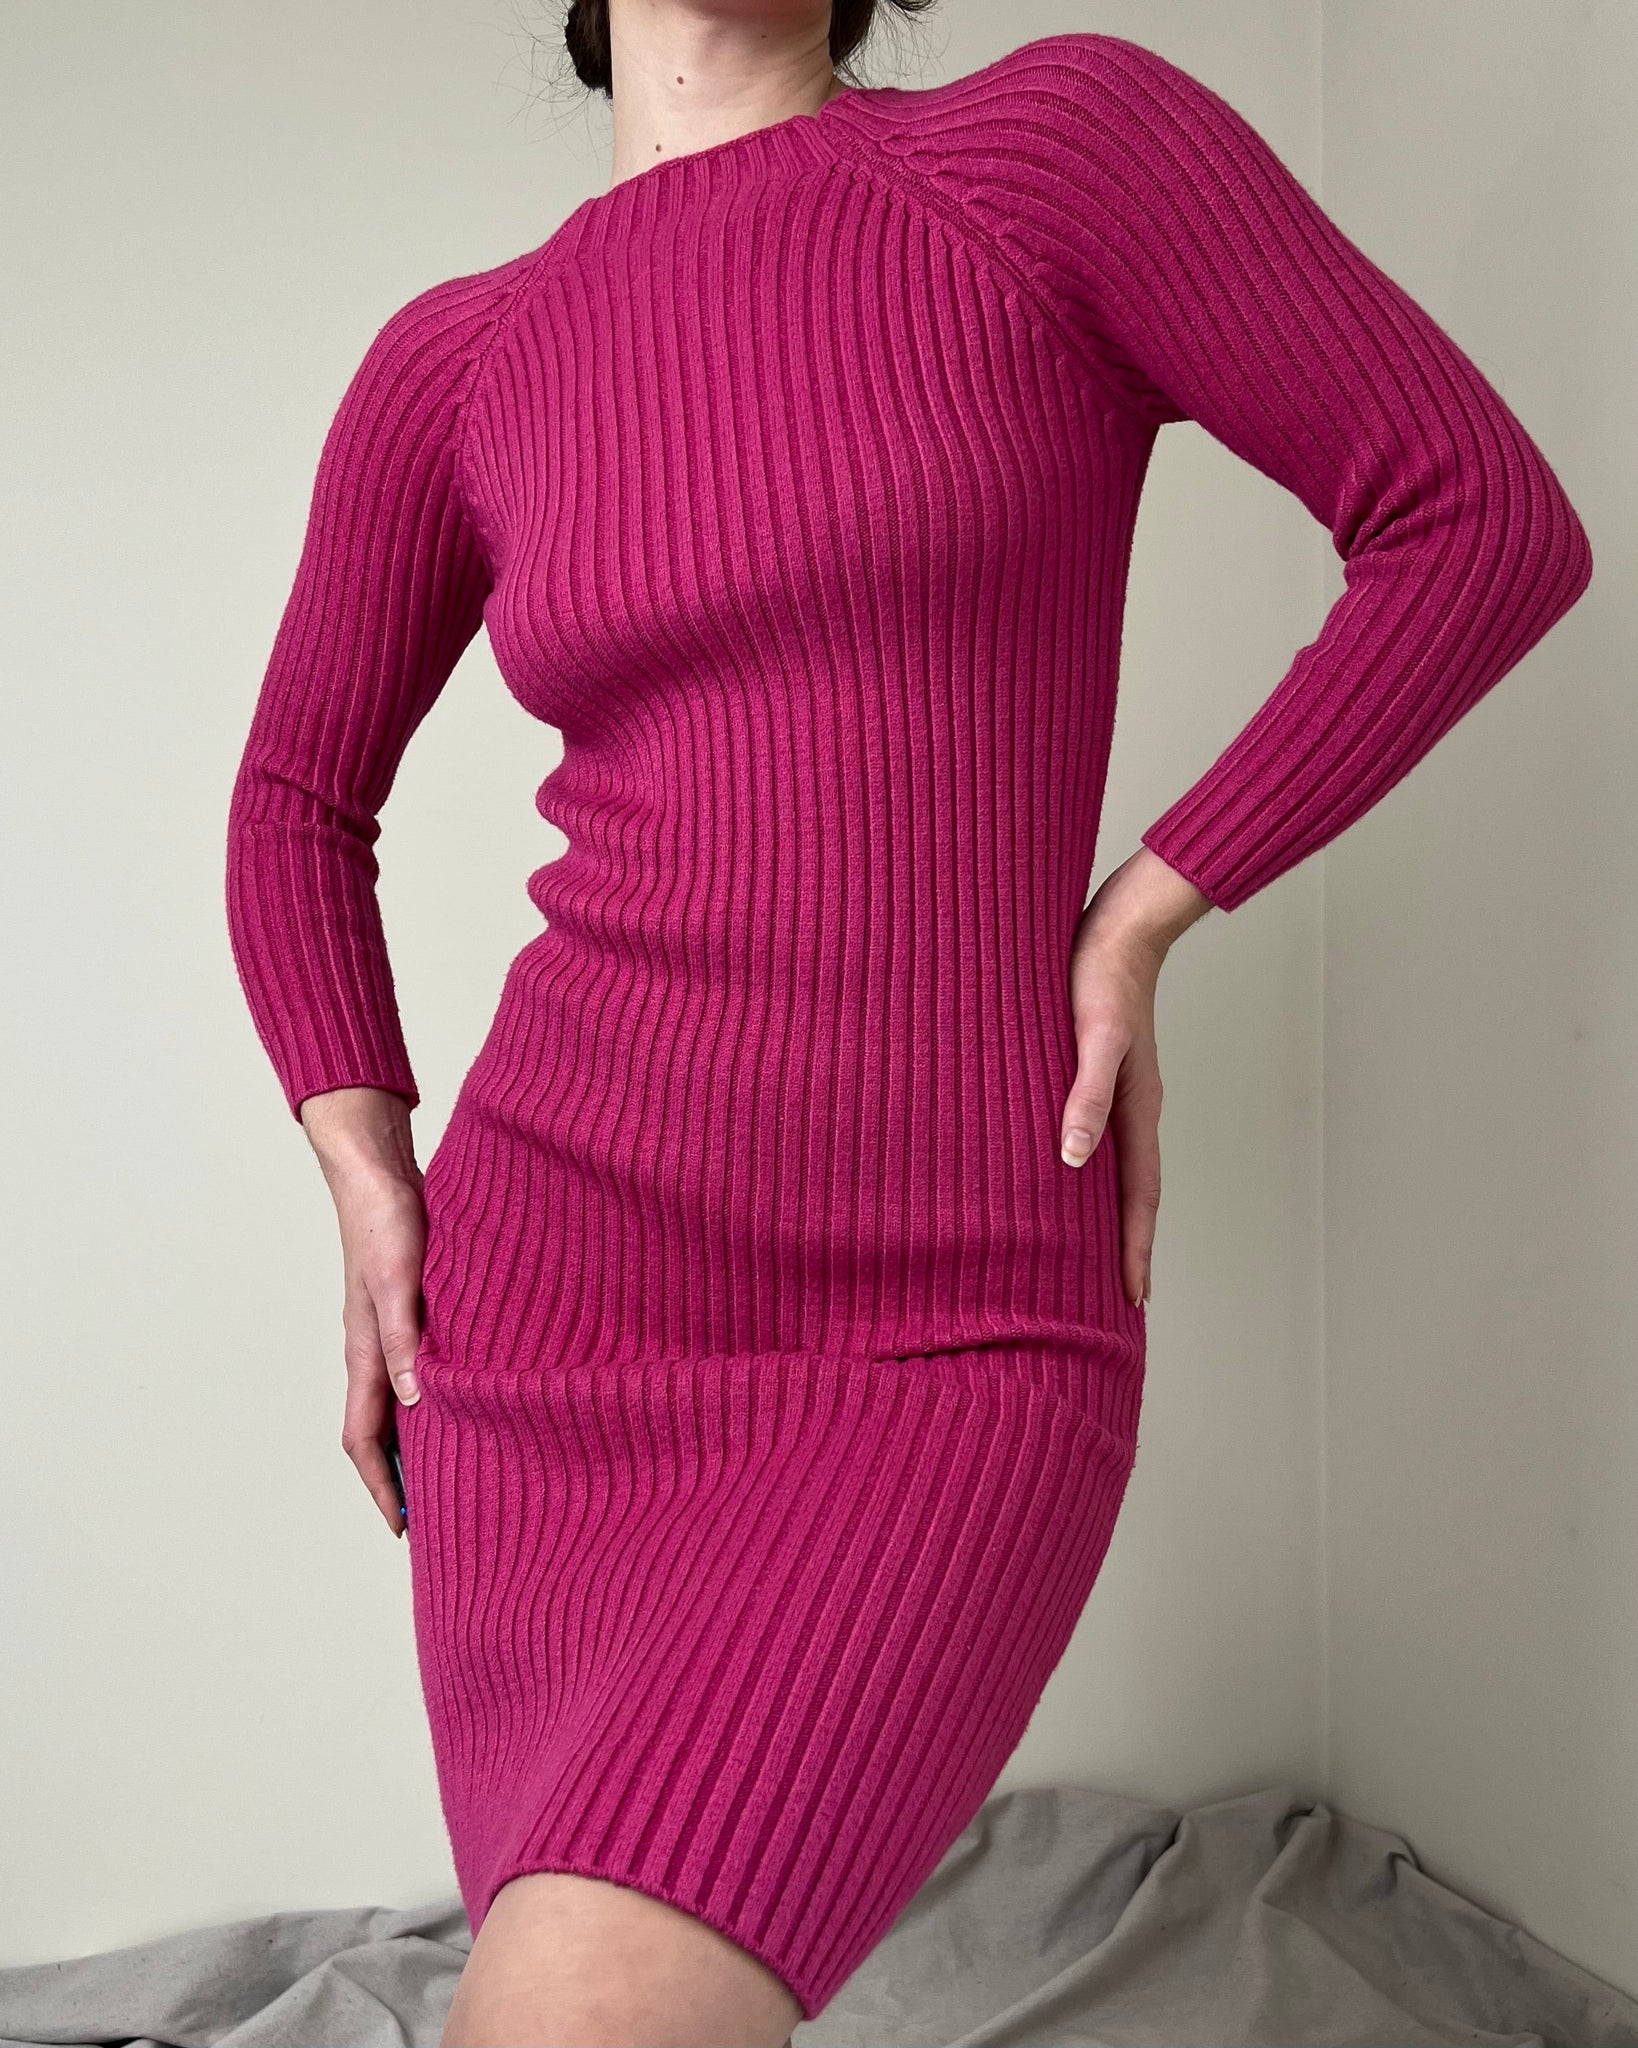 Hot Pink Rib Knit Sweater Dress (Fits XS/S)